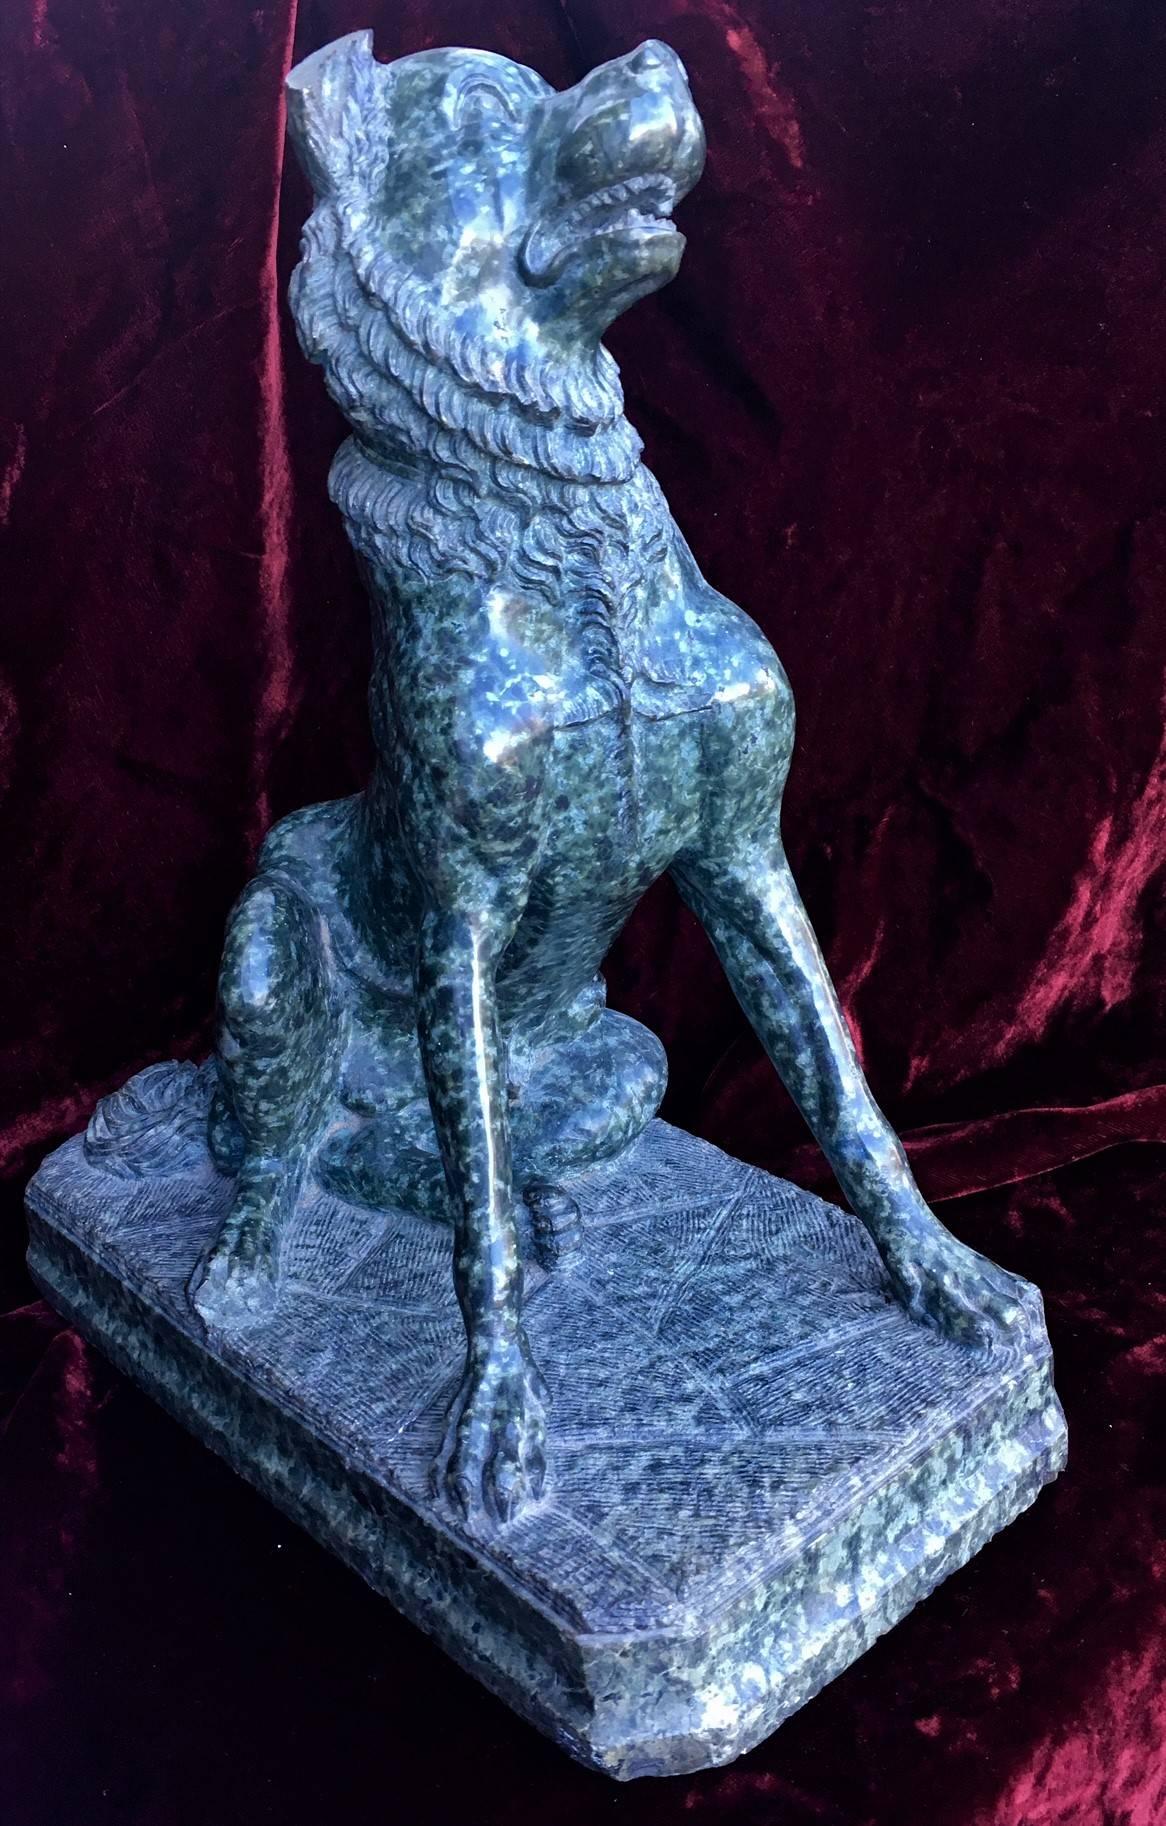 
Die antike Skulptur stellt eine Dogge dar, die aufrecht in einer aufmerksamen Haltung mit gespitzten Ohren, geneigtem Kopf und geöffnetem Maul sitzt. Handgeschnitzt aus einem Block grünen Marmors, unsigniert. Bei der Skulptur handelt es sich um